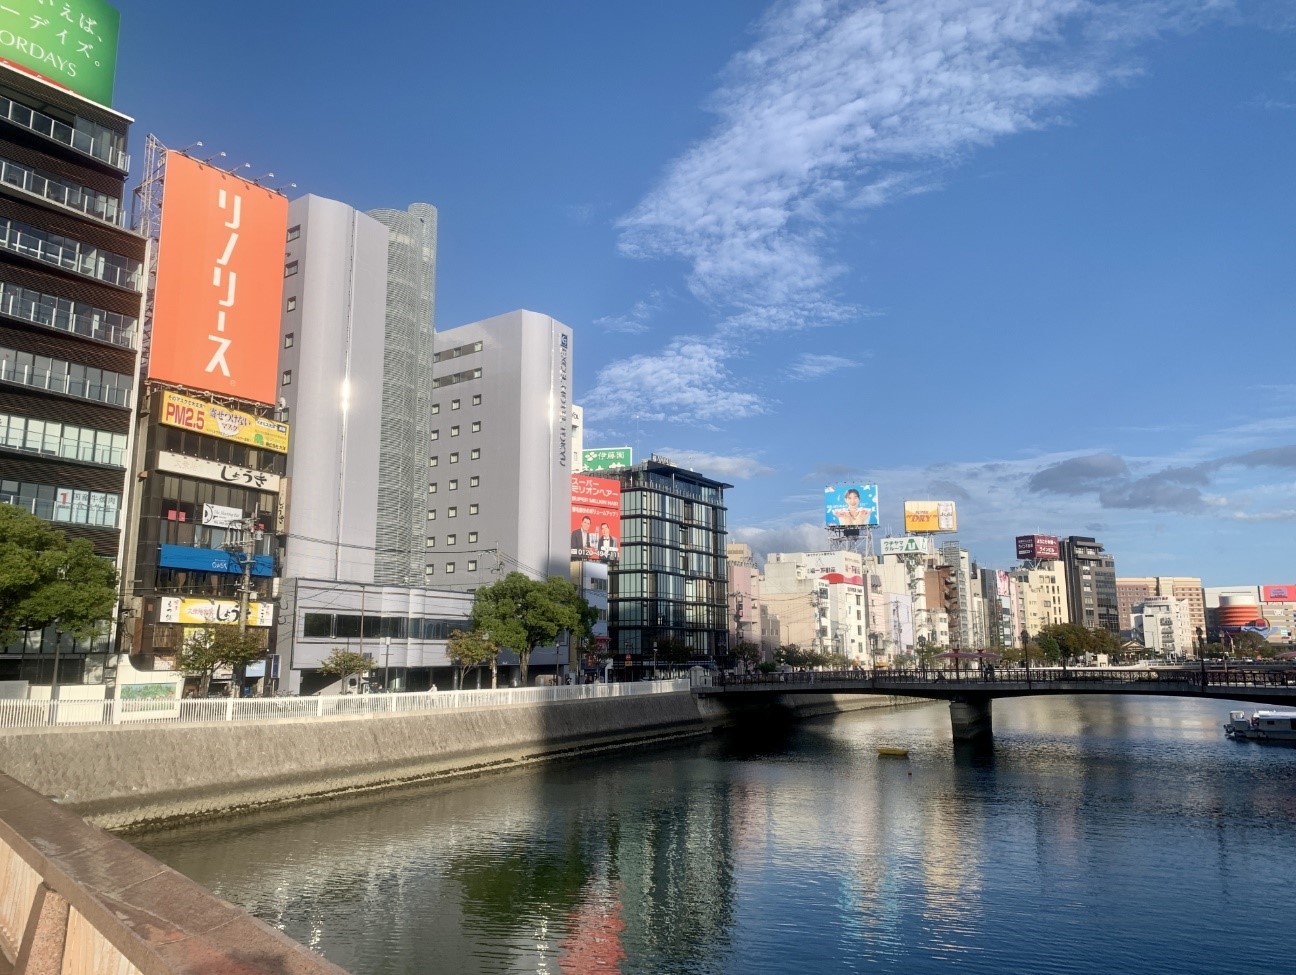 転勤したい街ランキングなどの常連として知られる福岡。理由のひとつに、中州で遊ぶ楽しさがあげられる